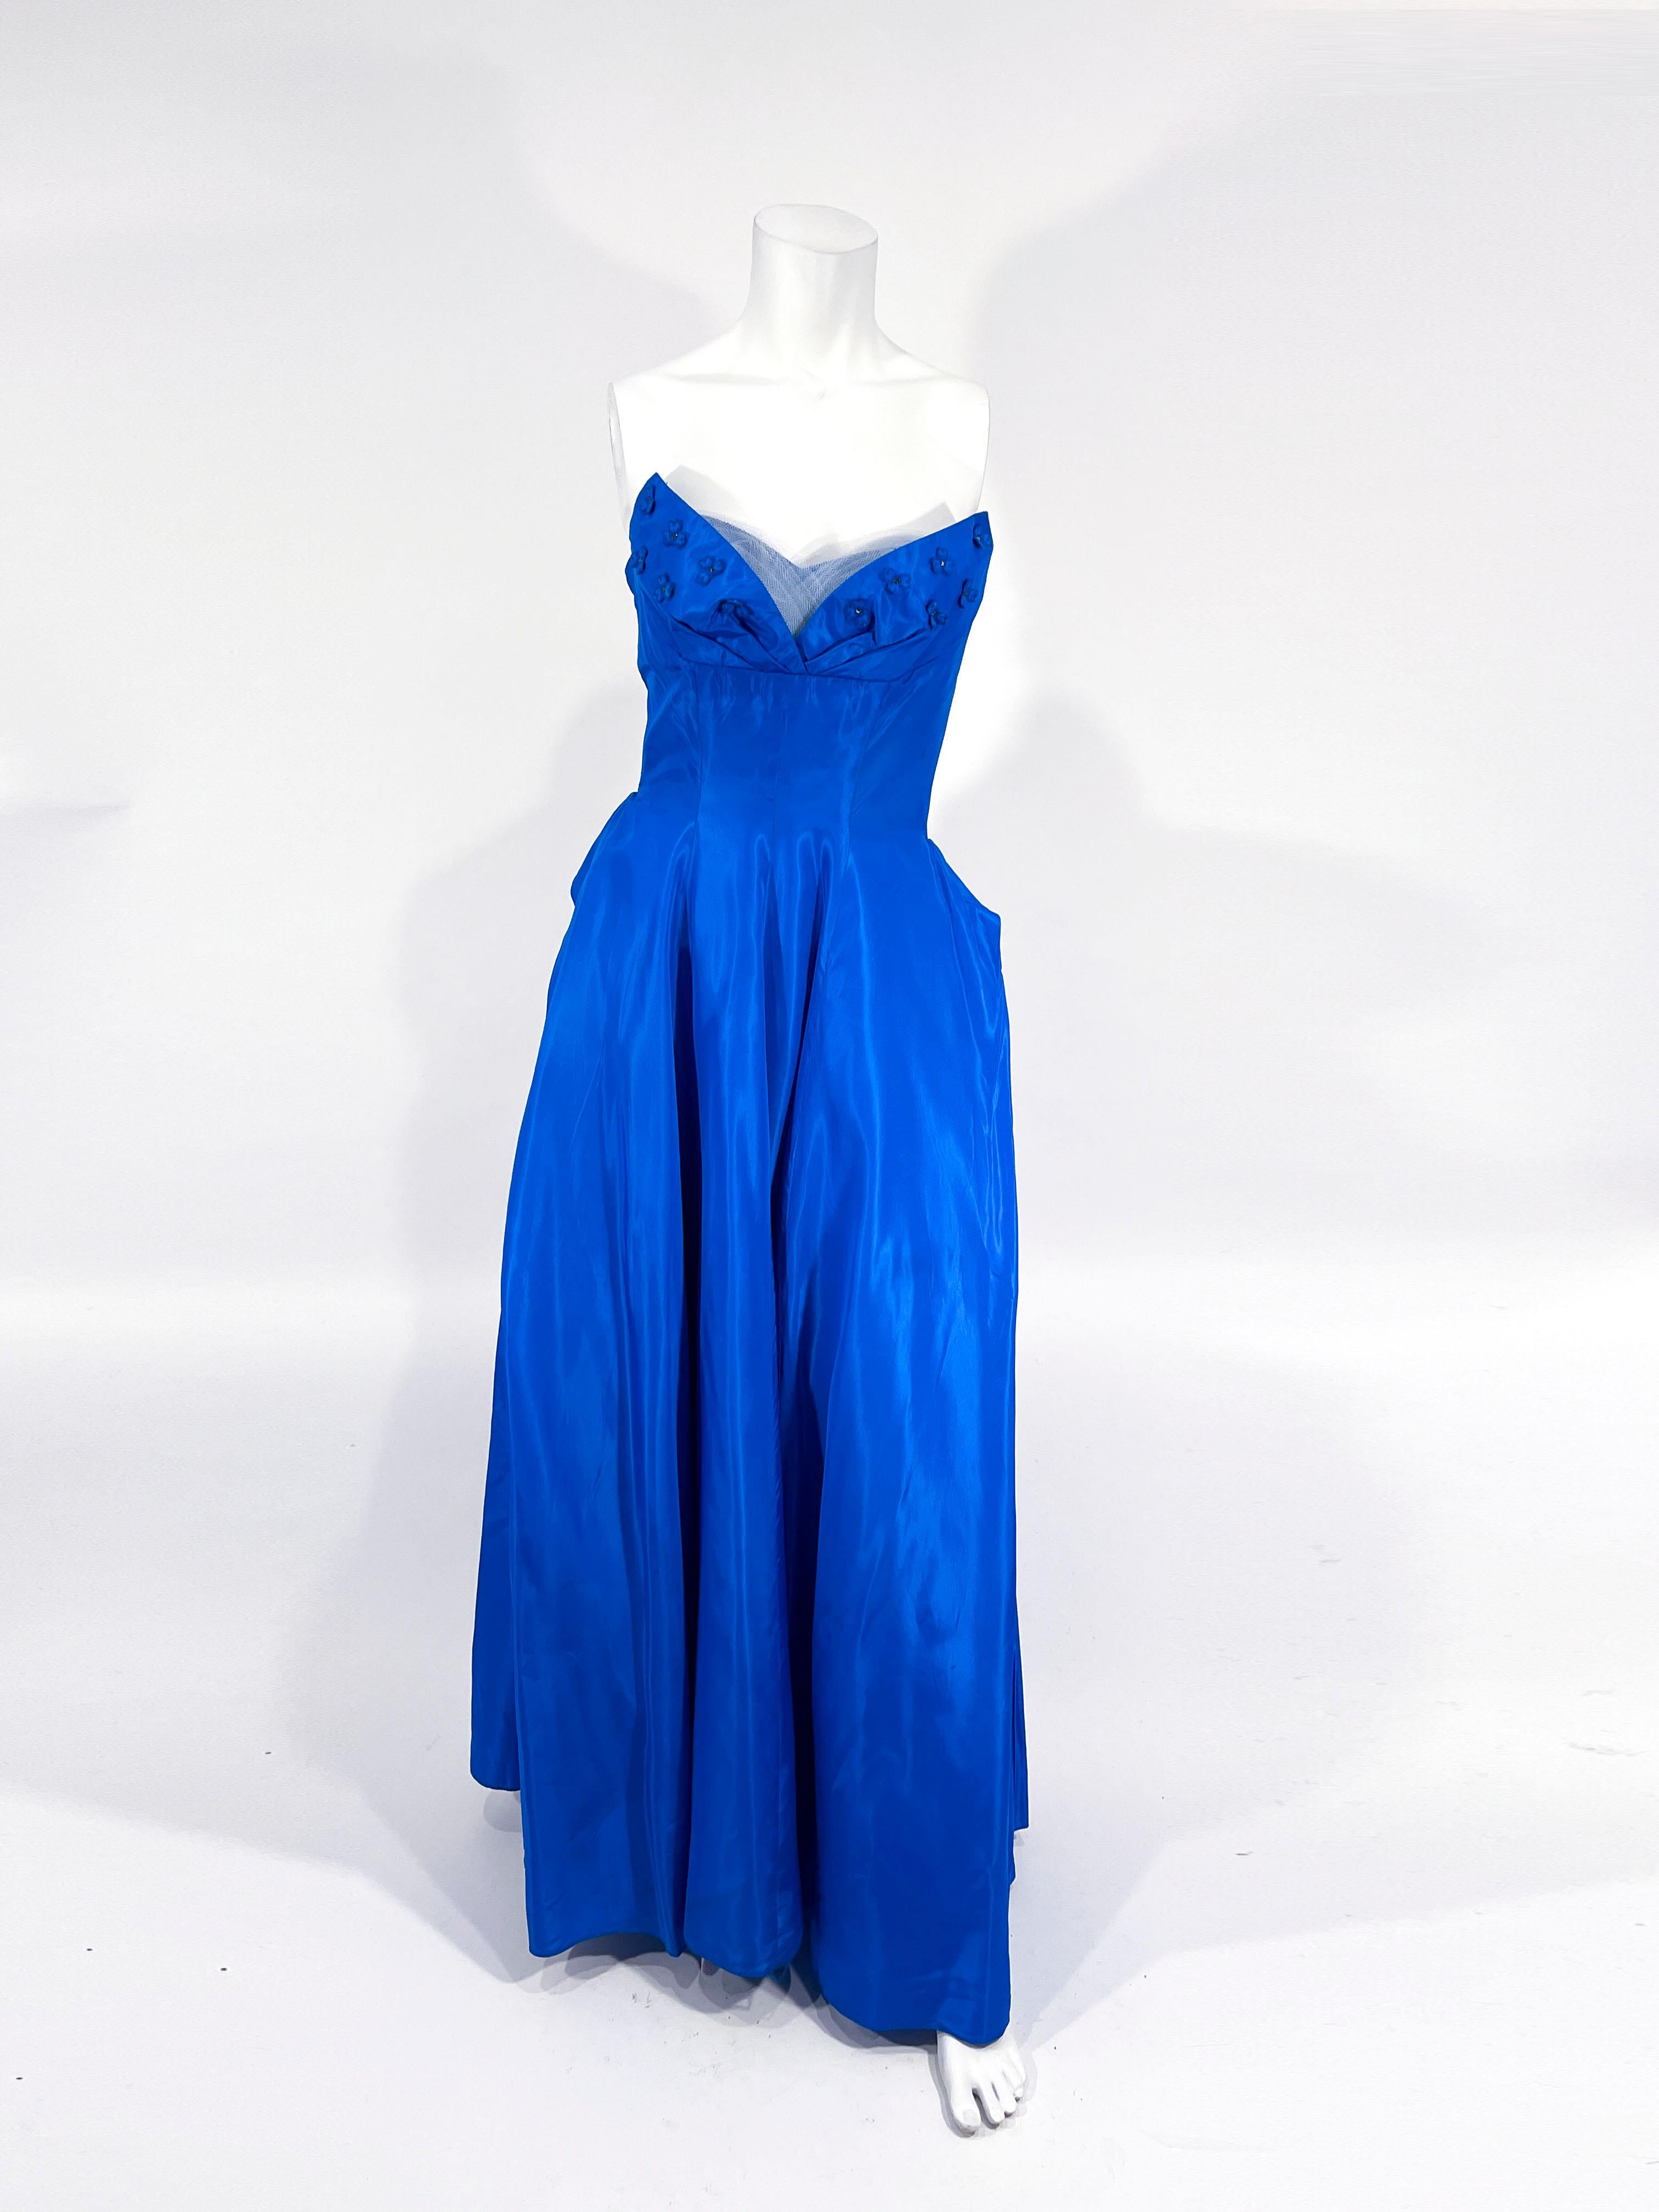 Königsblaues Taft-Ballkleid aus den 1950er Jahren mit herzförmigem Ausschnitt, überlagert von einer plissierten Tüllverkleidung und verziert mit Strassblumen-Applikationen. Der bodenlange Rock ist im Rücken stark gerafft und mit einer eingenähten